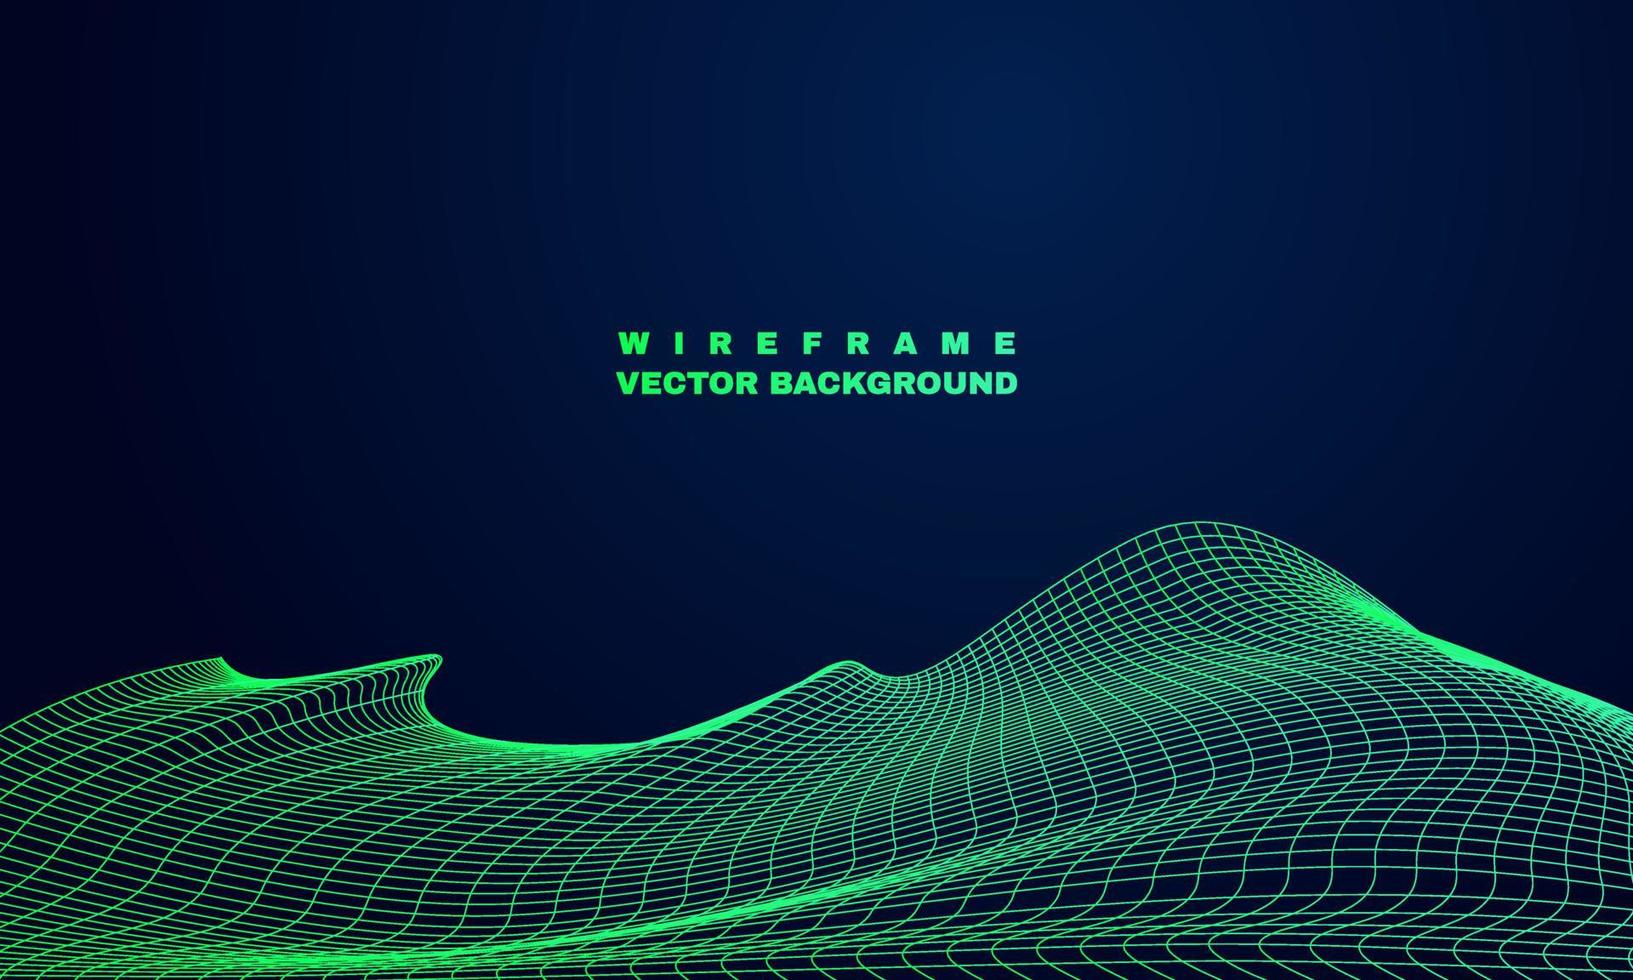 estoque vetor abstrato wireframe paisagem ciberespaço tecnologia wireframe fundo vetor parte 2